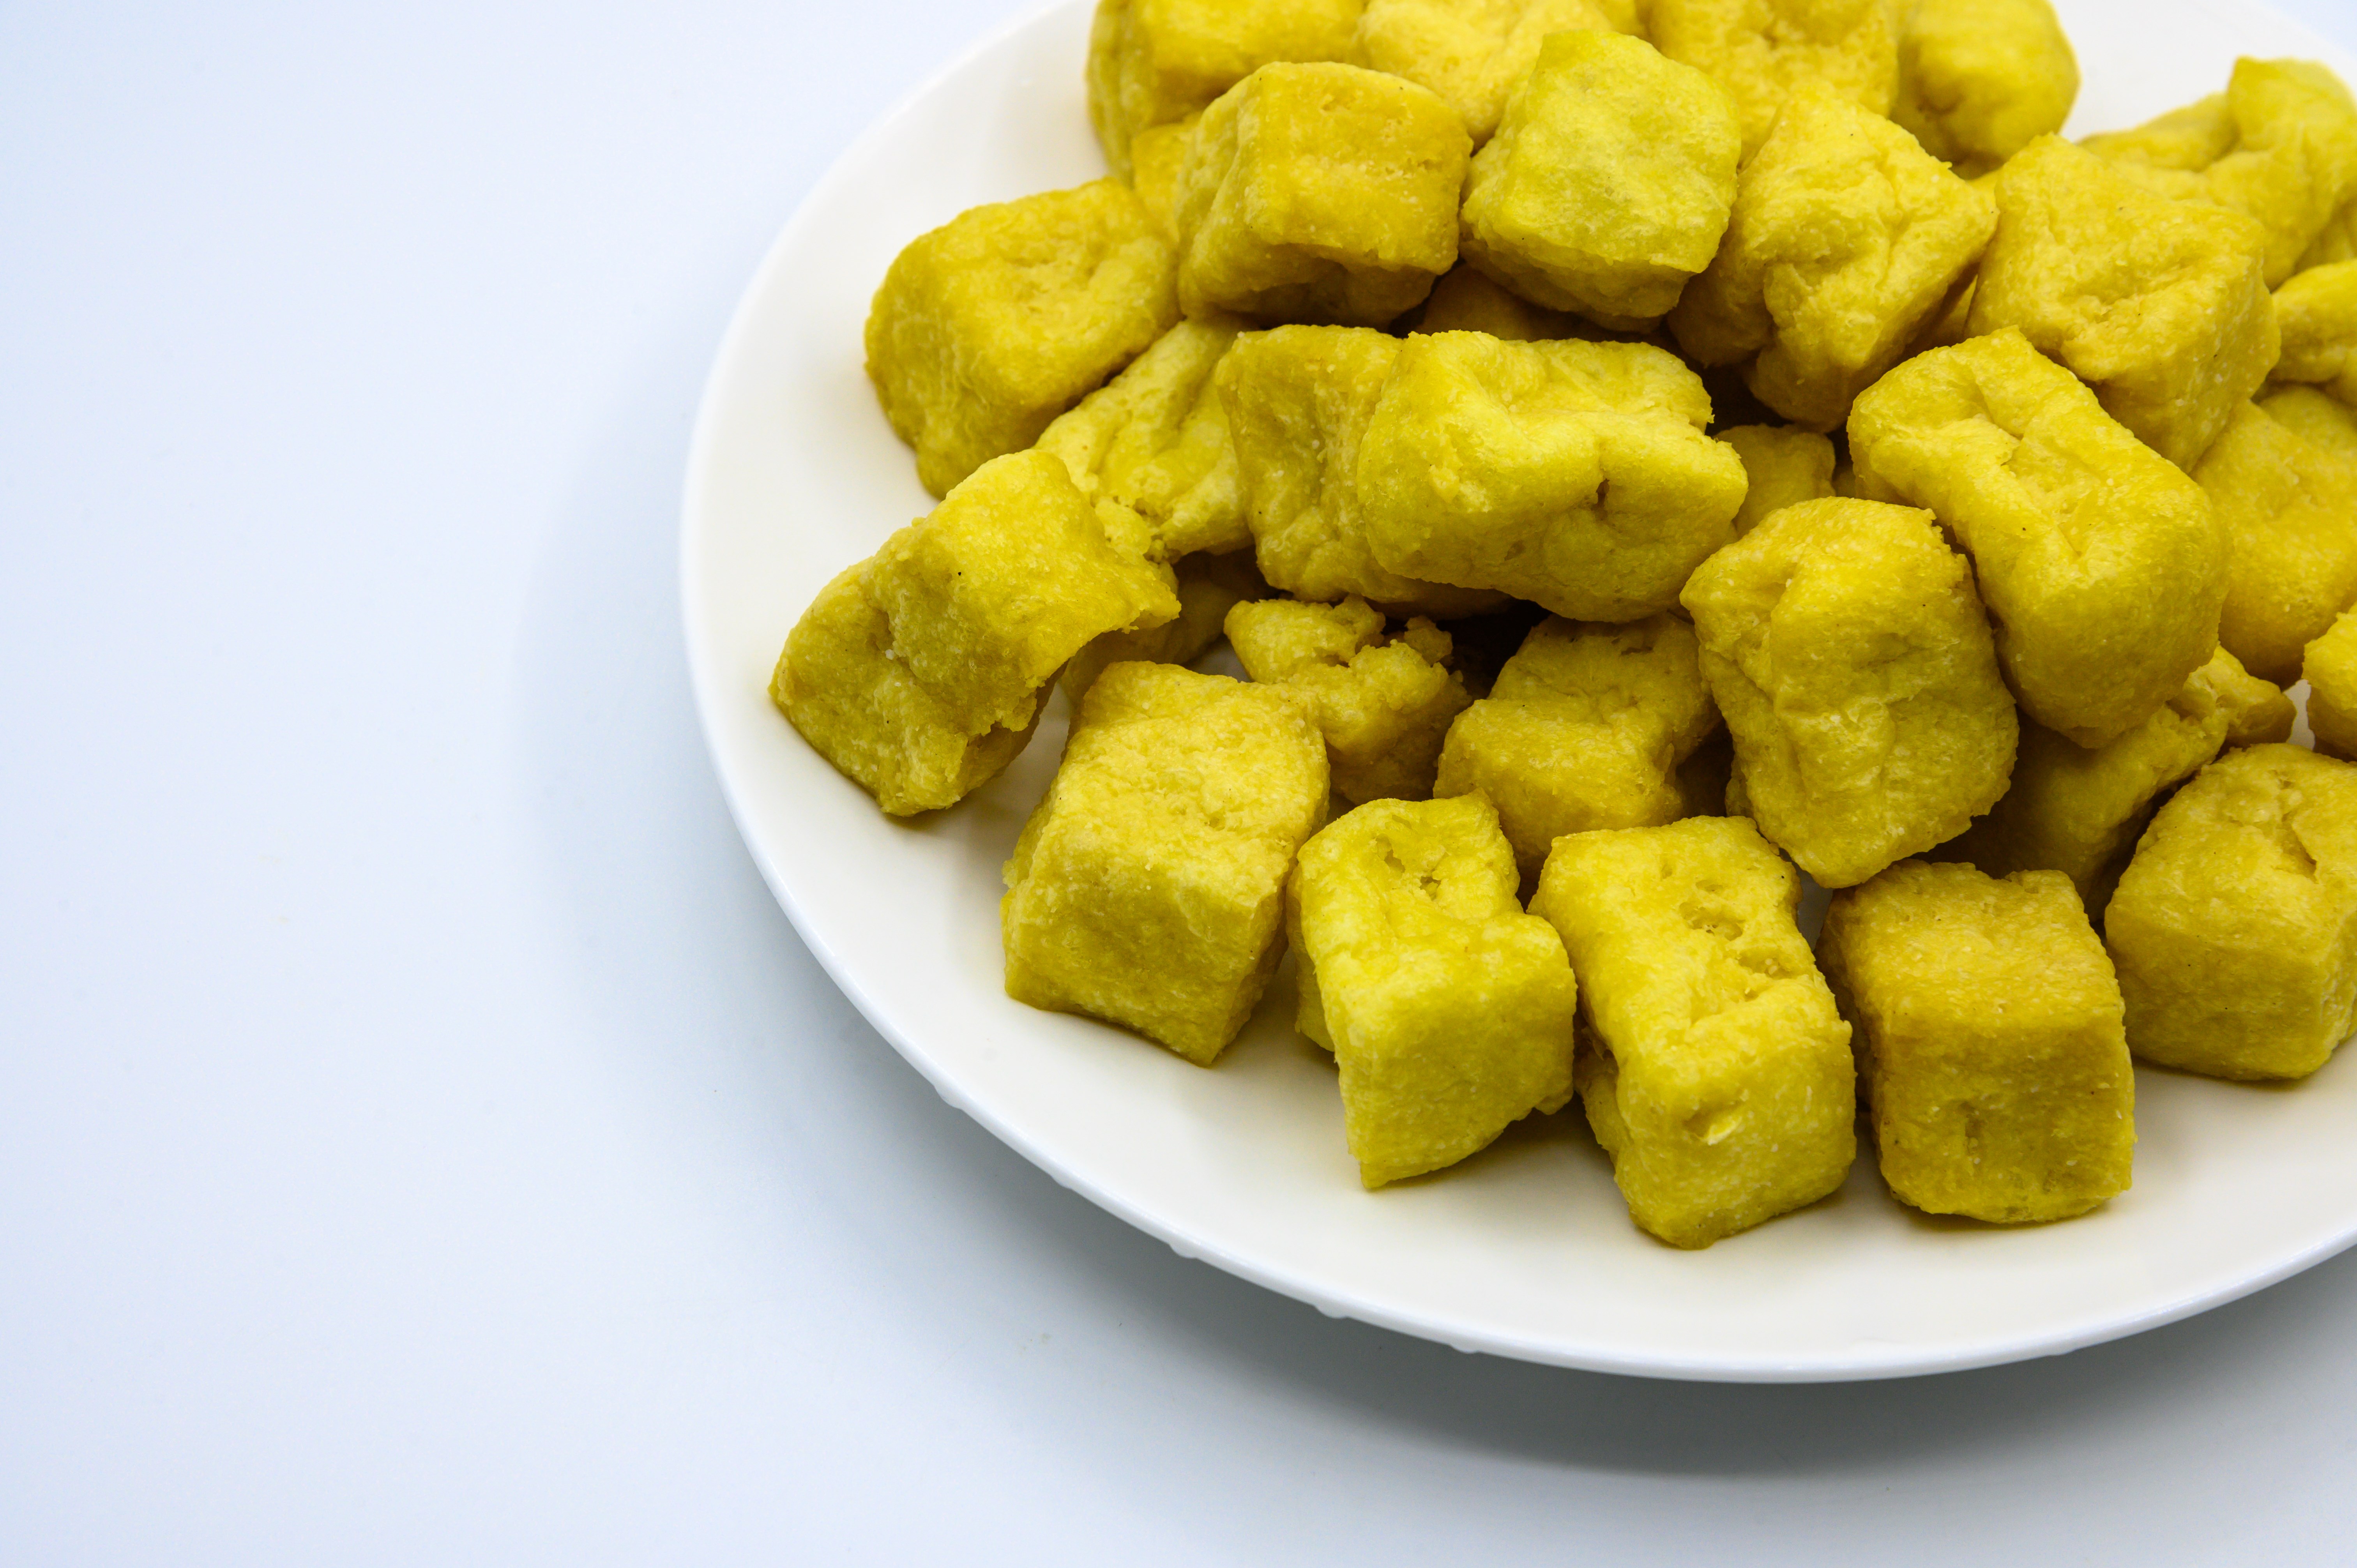 黄豆 豆子 豆类 黄豆制品 豆腐 油炸的 油炸豆腐 食物 食材 食品 食物